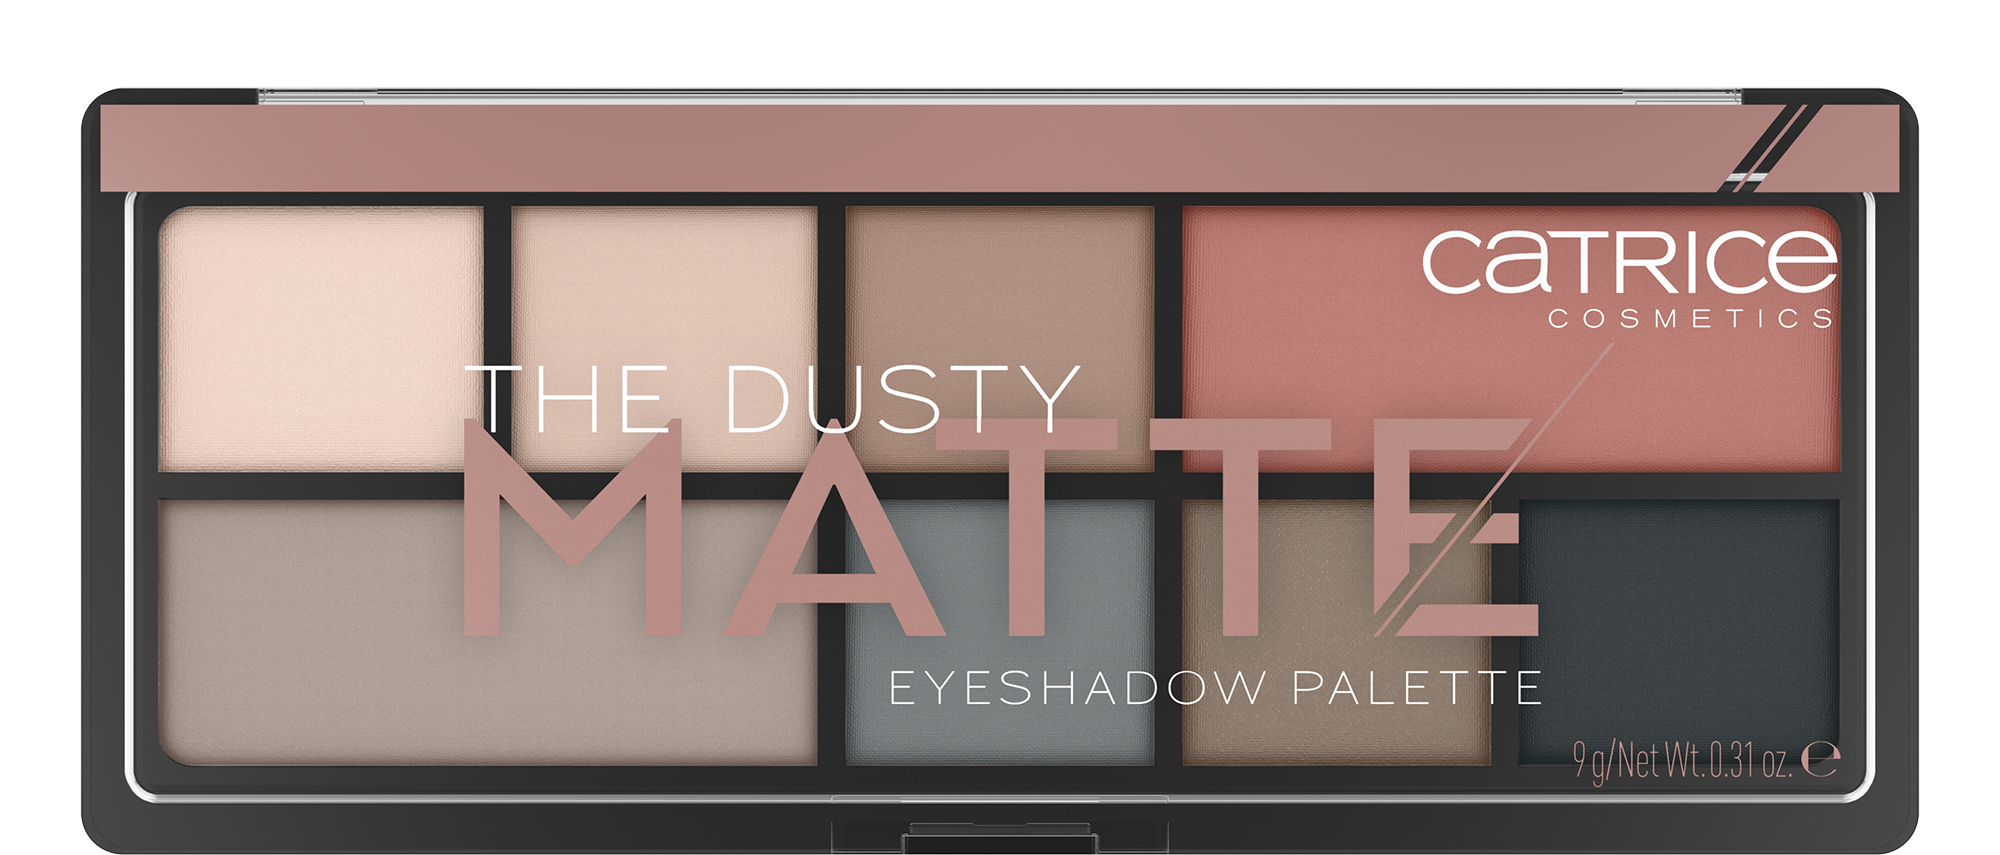 The Dusty Matte Eyeshadow Palette